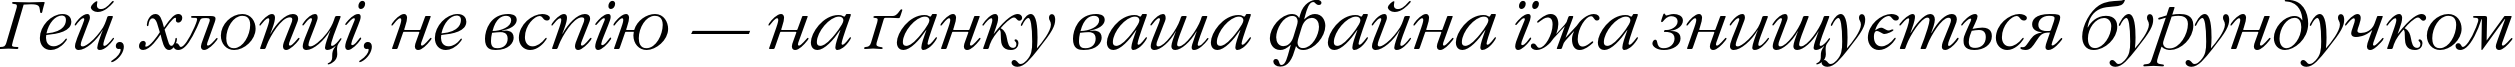 Пример написания шрифтом GaramondC Italic текста на украинском